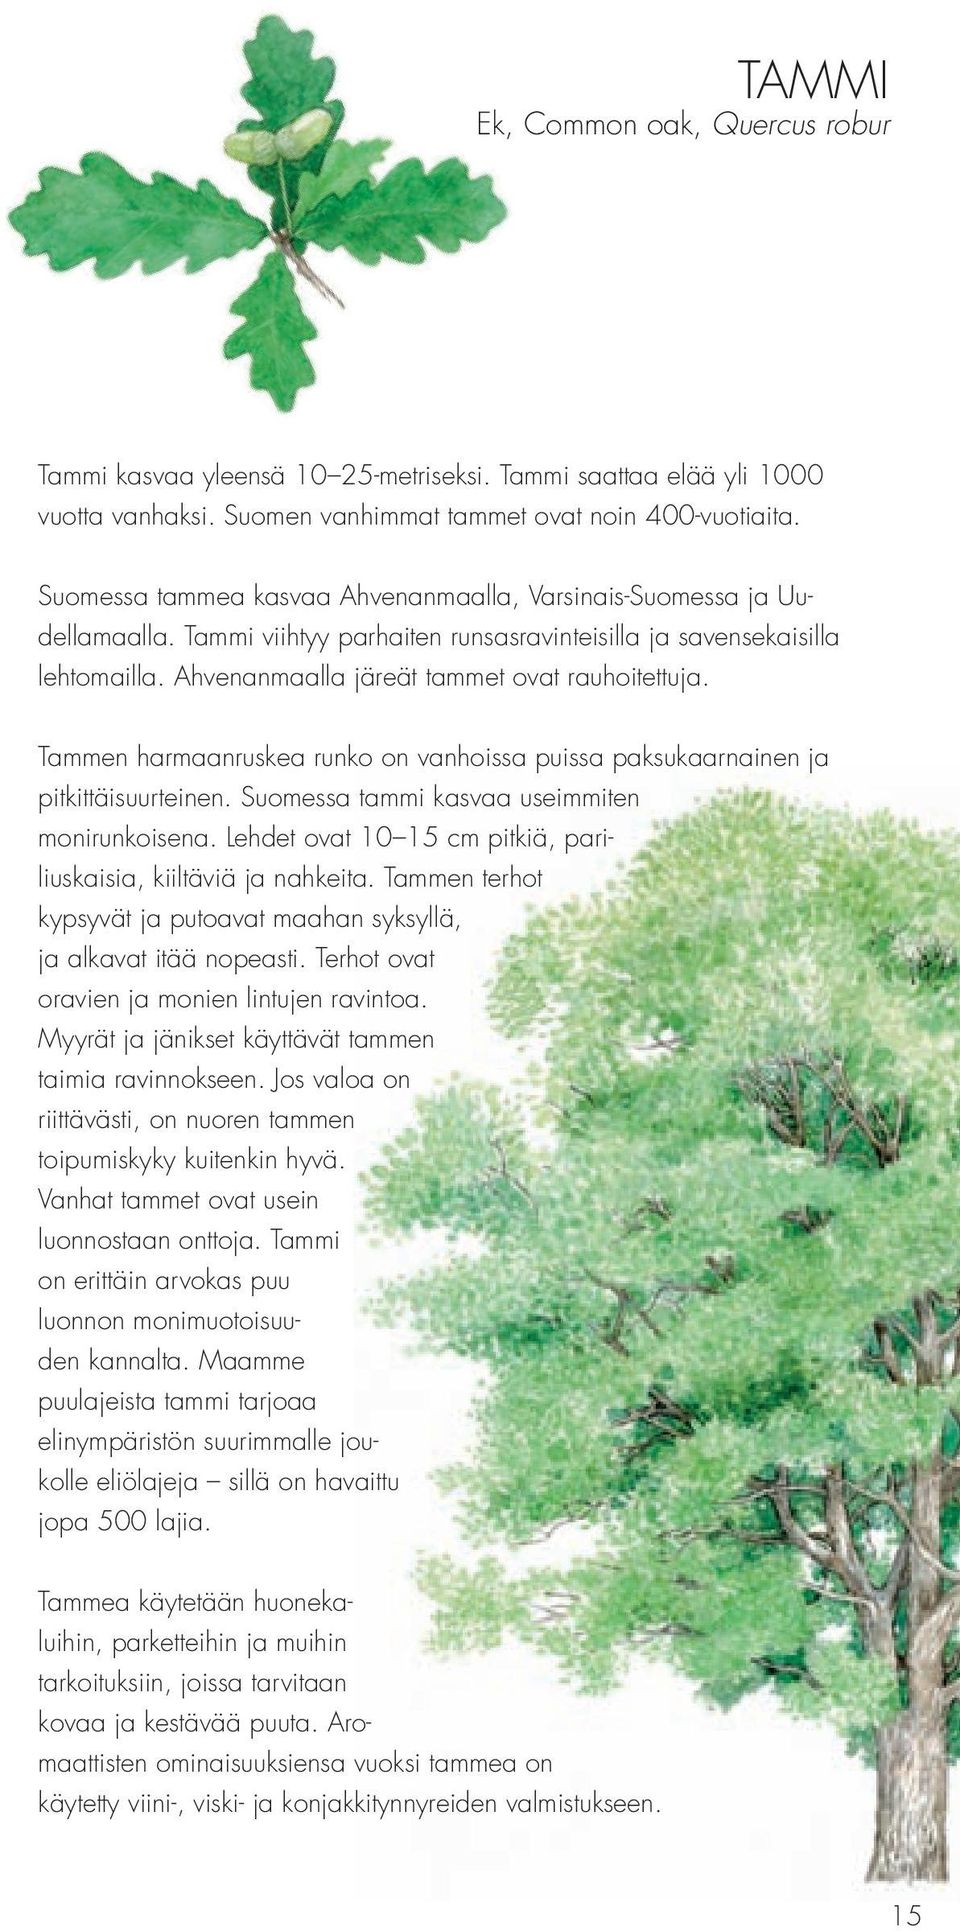 Tammen harmaanruskea runko on vanhoissa puissa paksukaarnainen ja pitkittäisuurteinen. Suomessa tammi kasvaa useimmiten monirunkoisena.